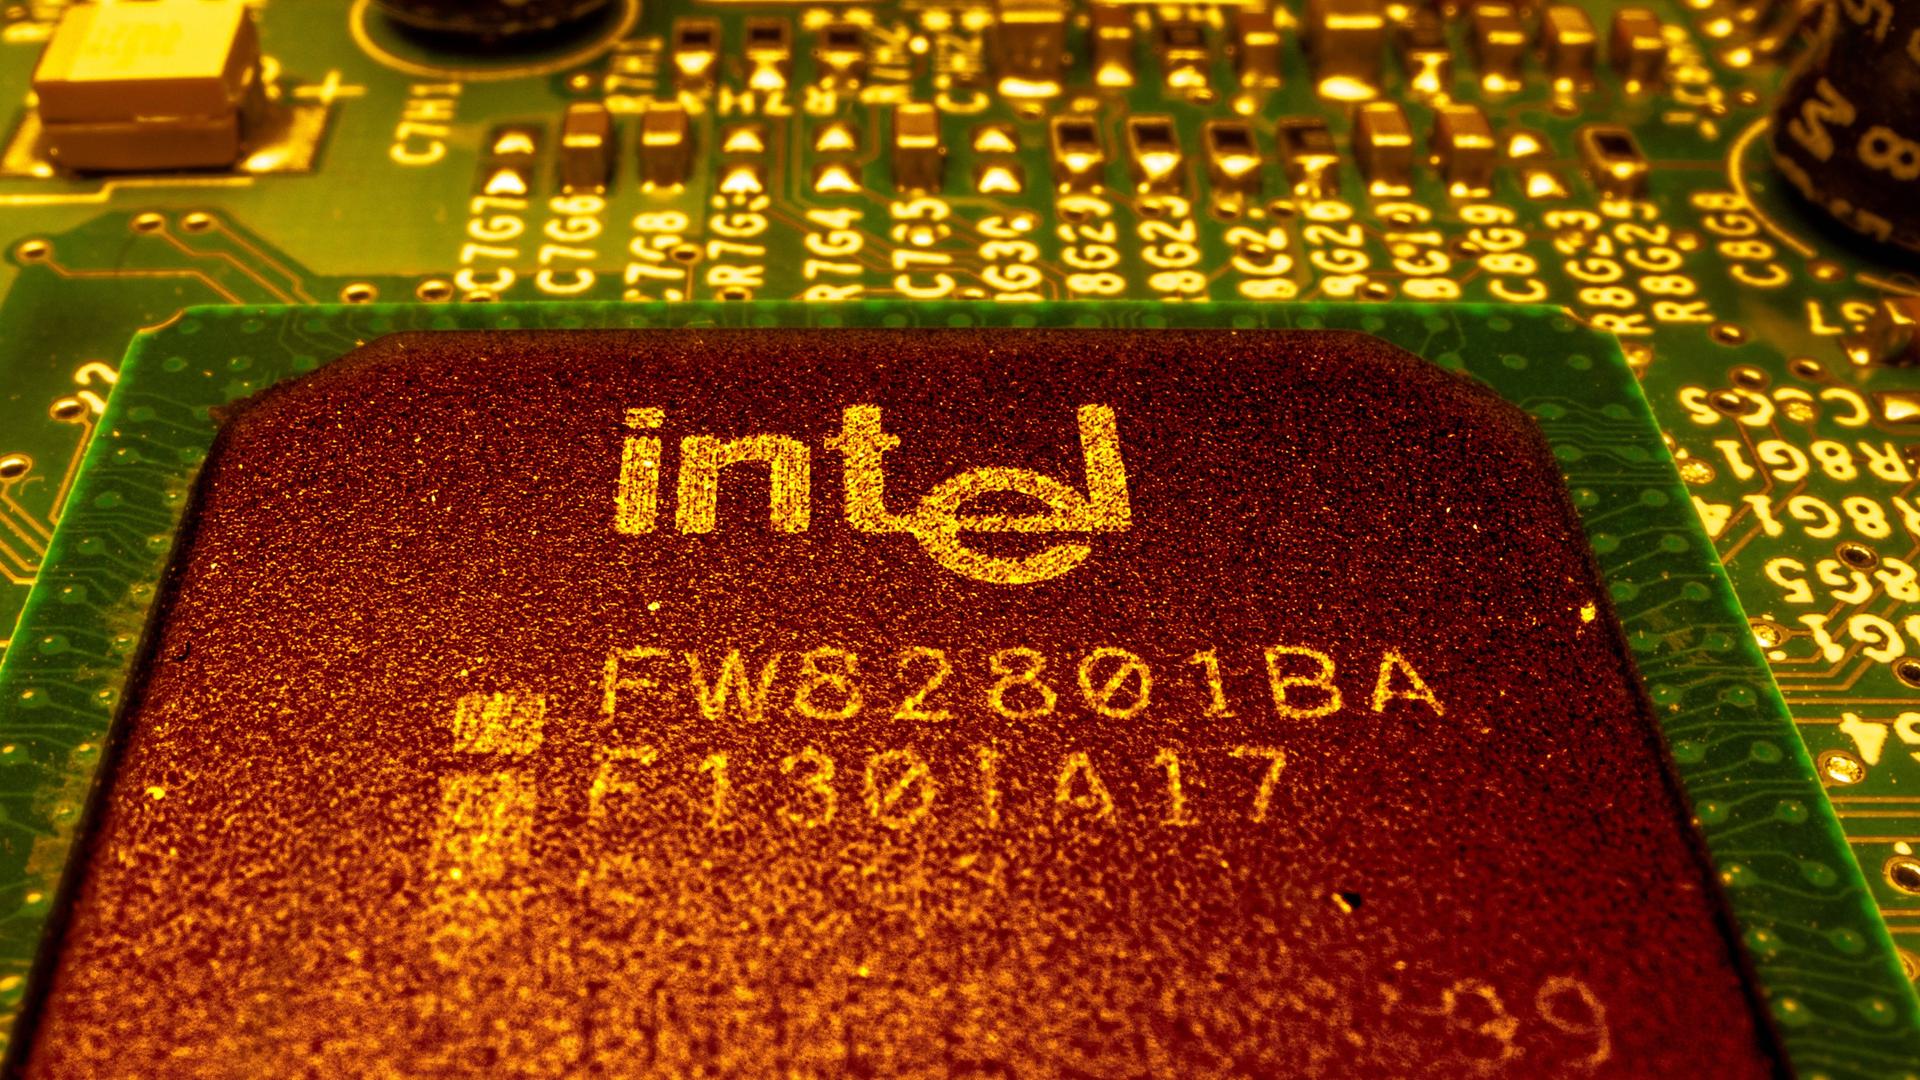 Intel Mikroprozessor (CPU) auf einer Computerplatine.